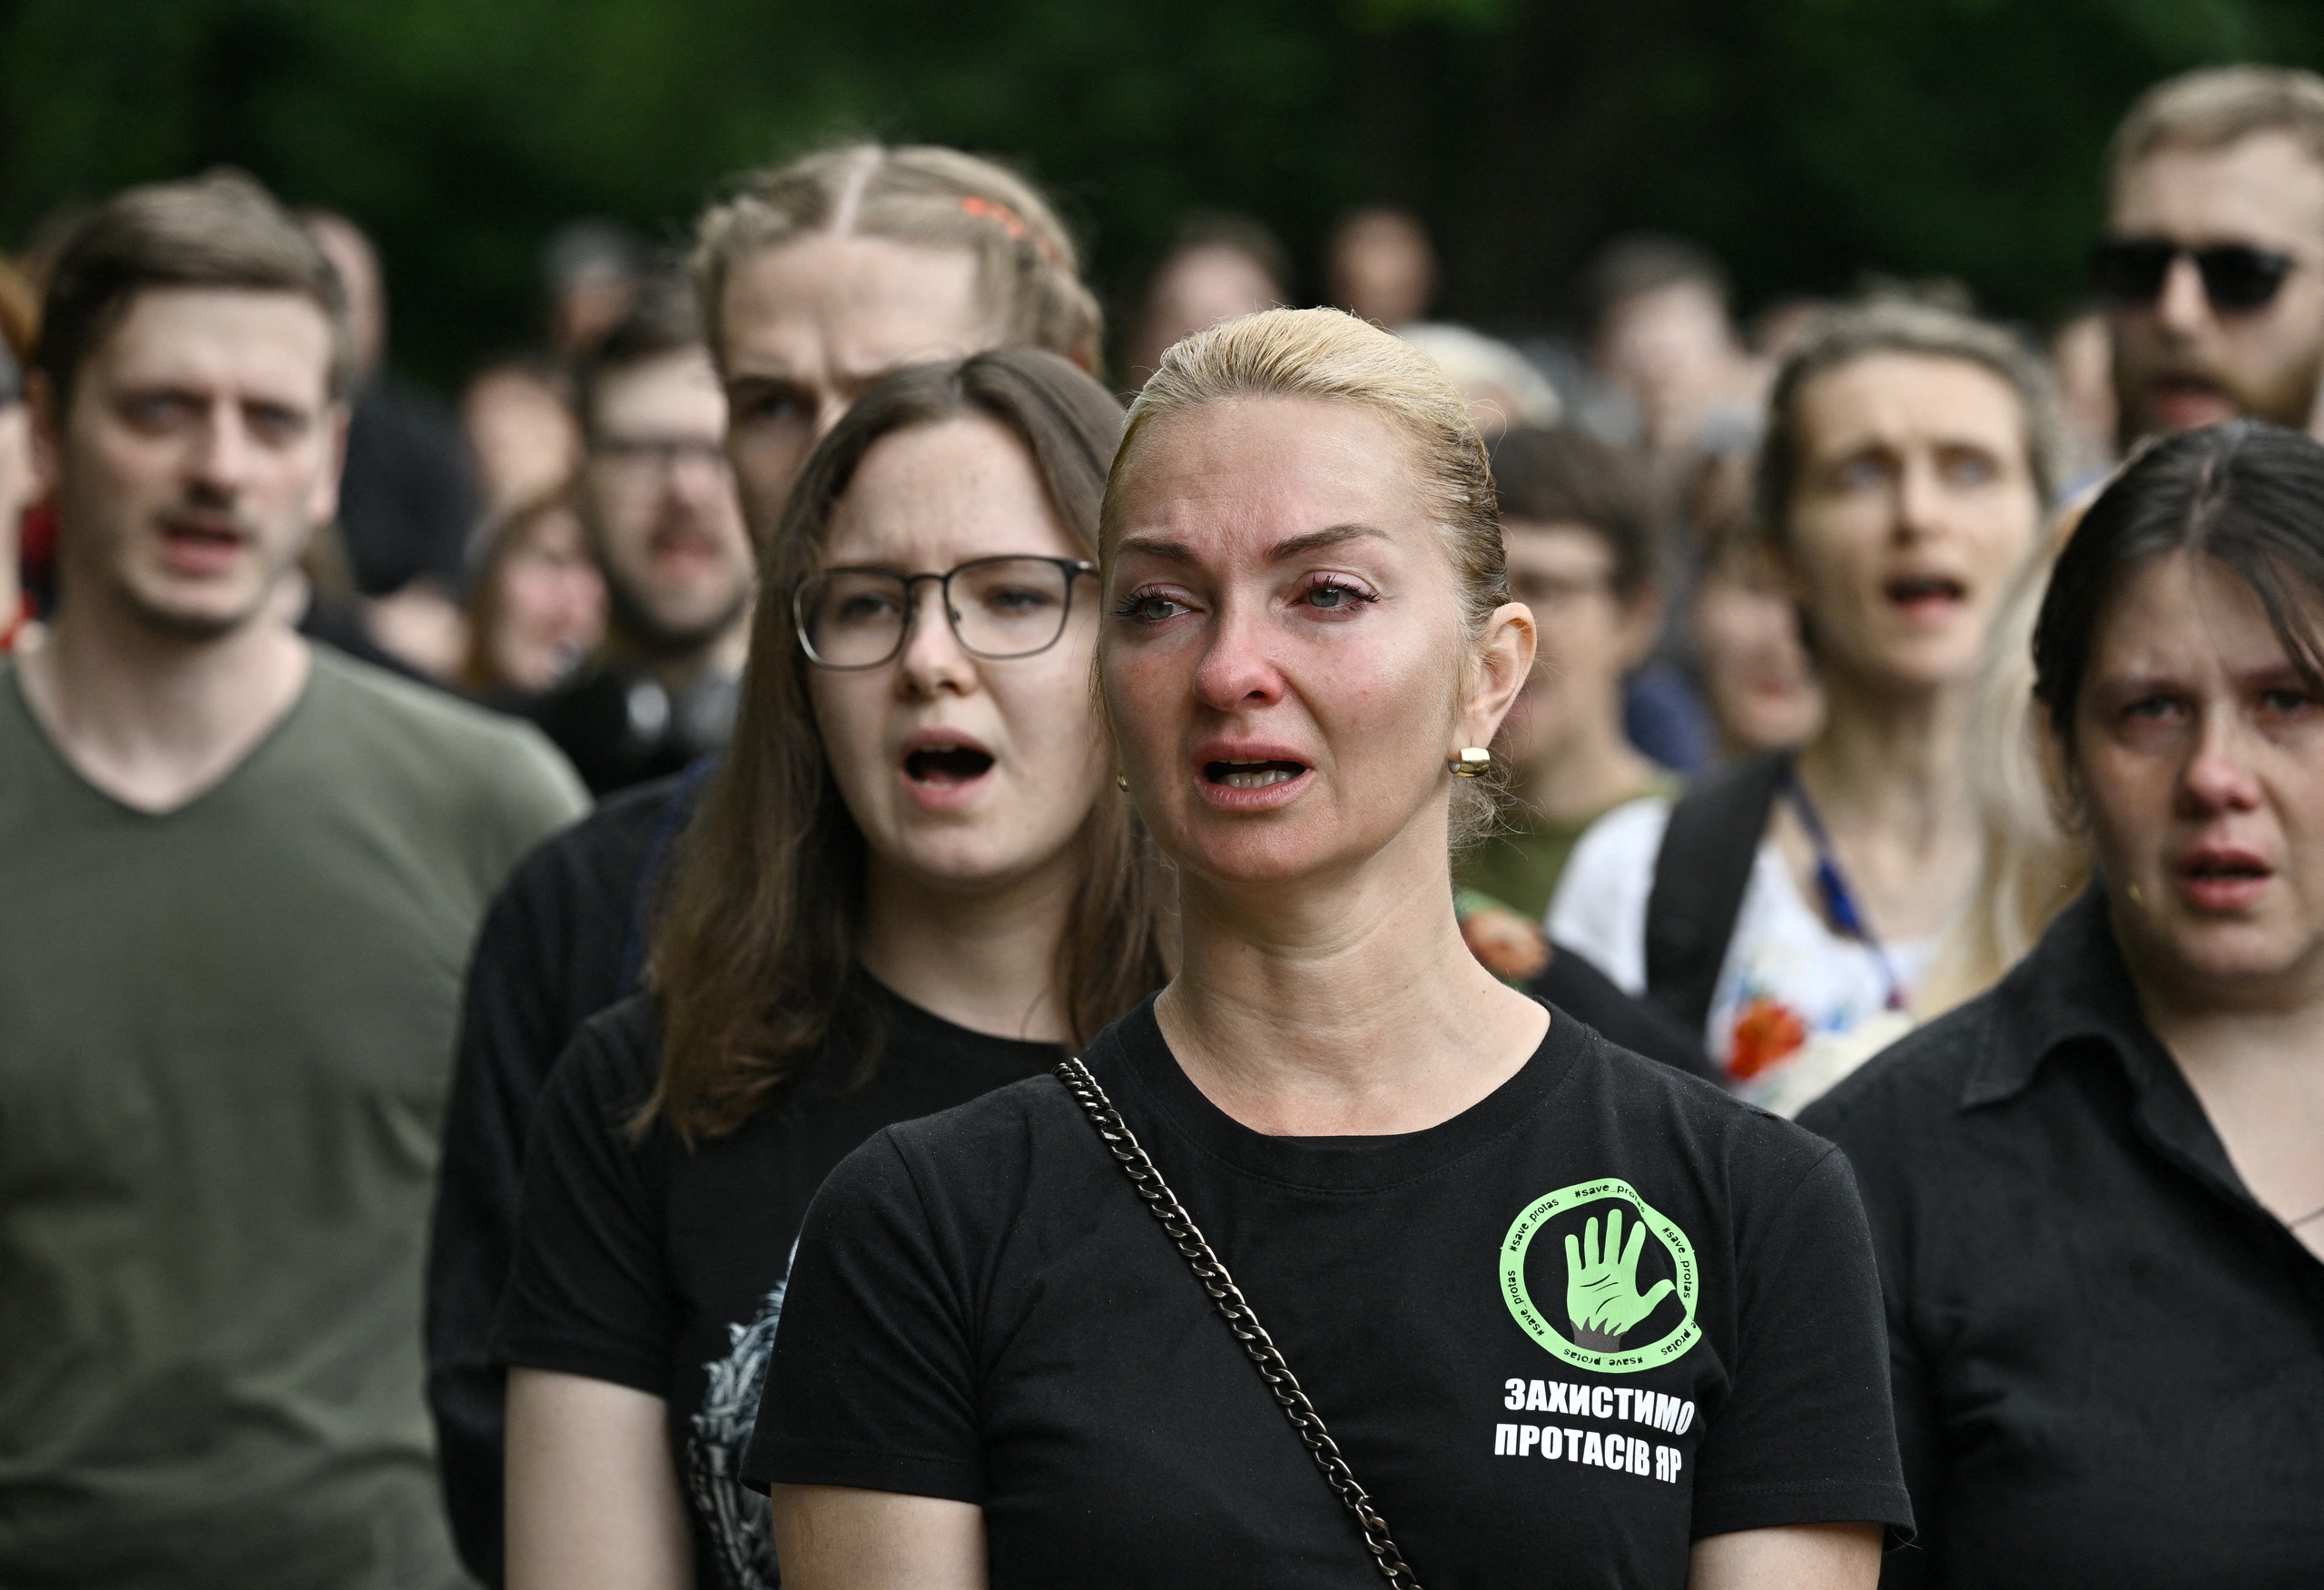 De begrafenis van de bekende Oekraïense activist Roman Ratushny die omkwam bij de gevechten rond Izjoem